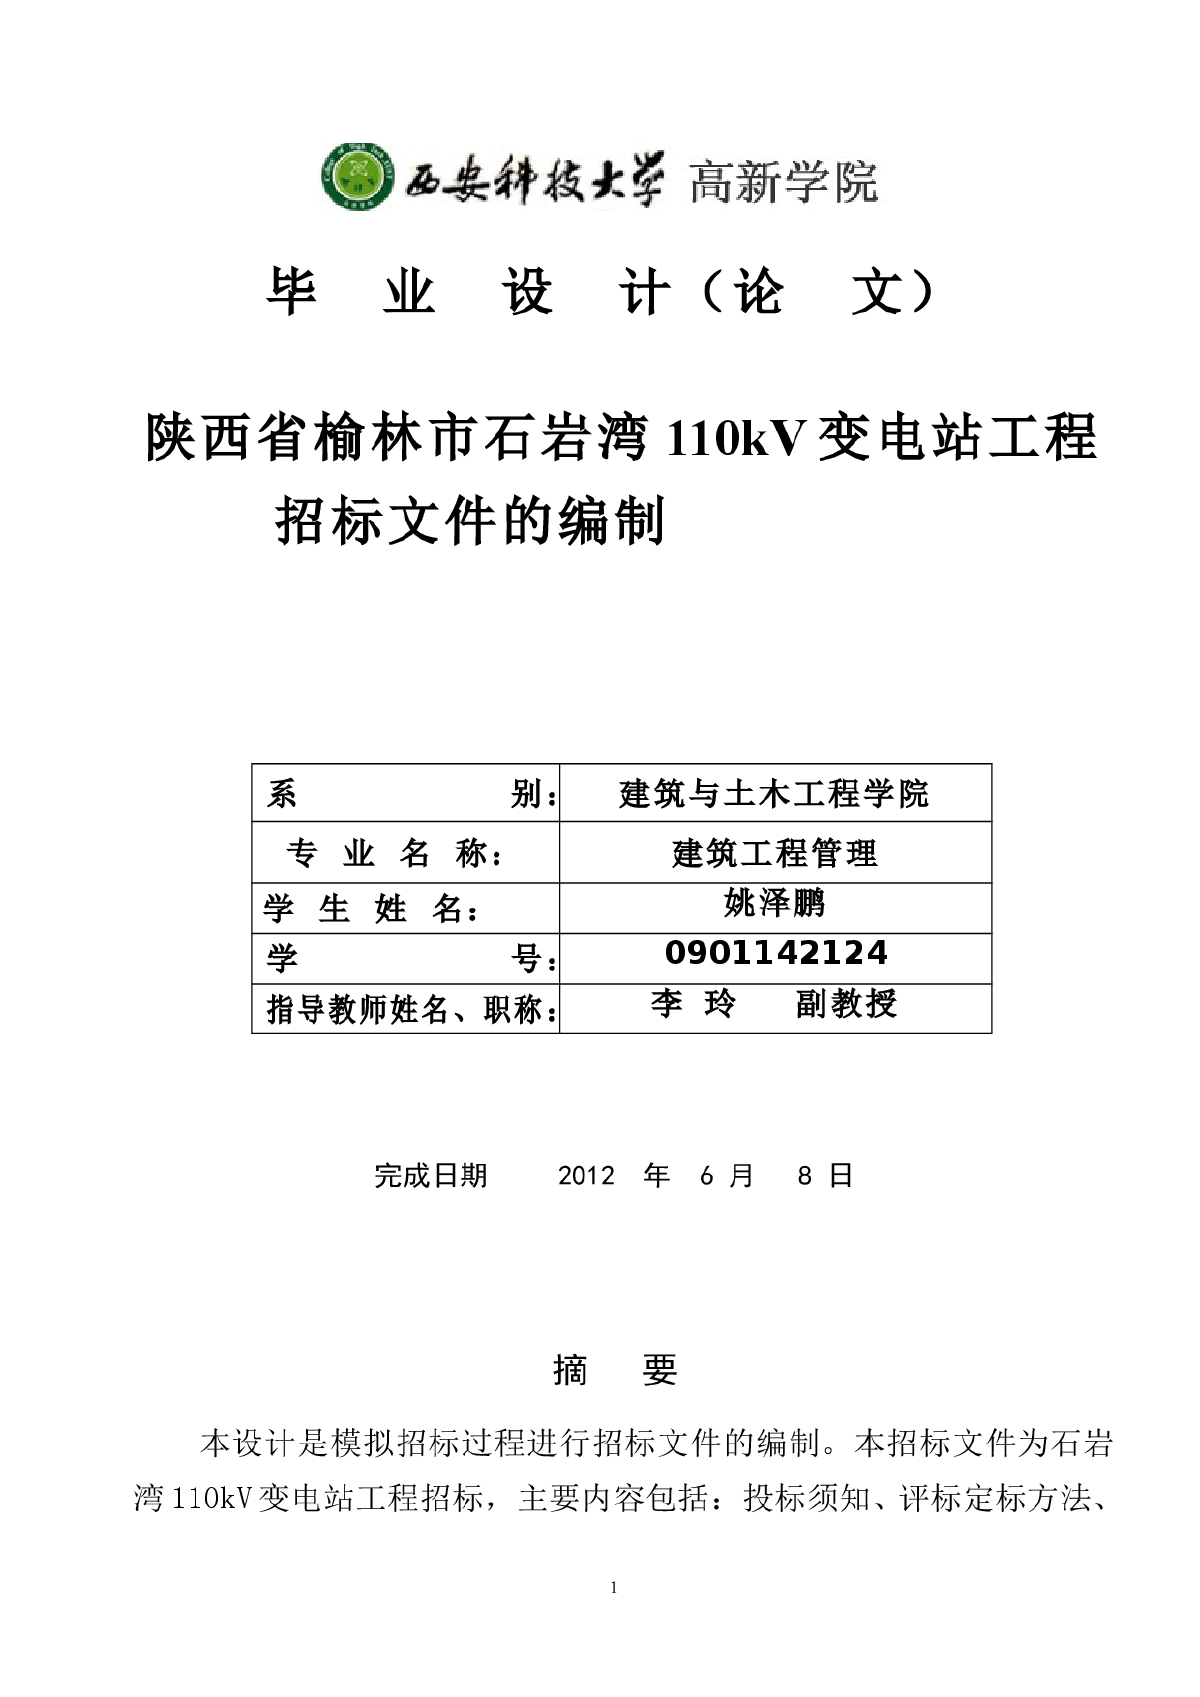 陕西省石岩湾110kV变电站工程招标文件的编制